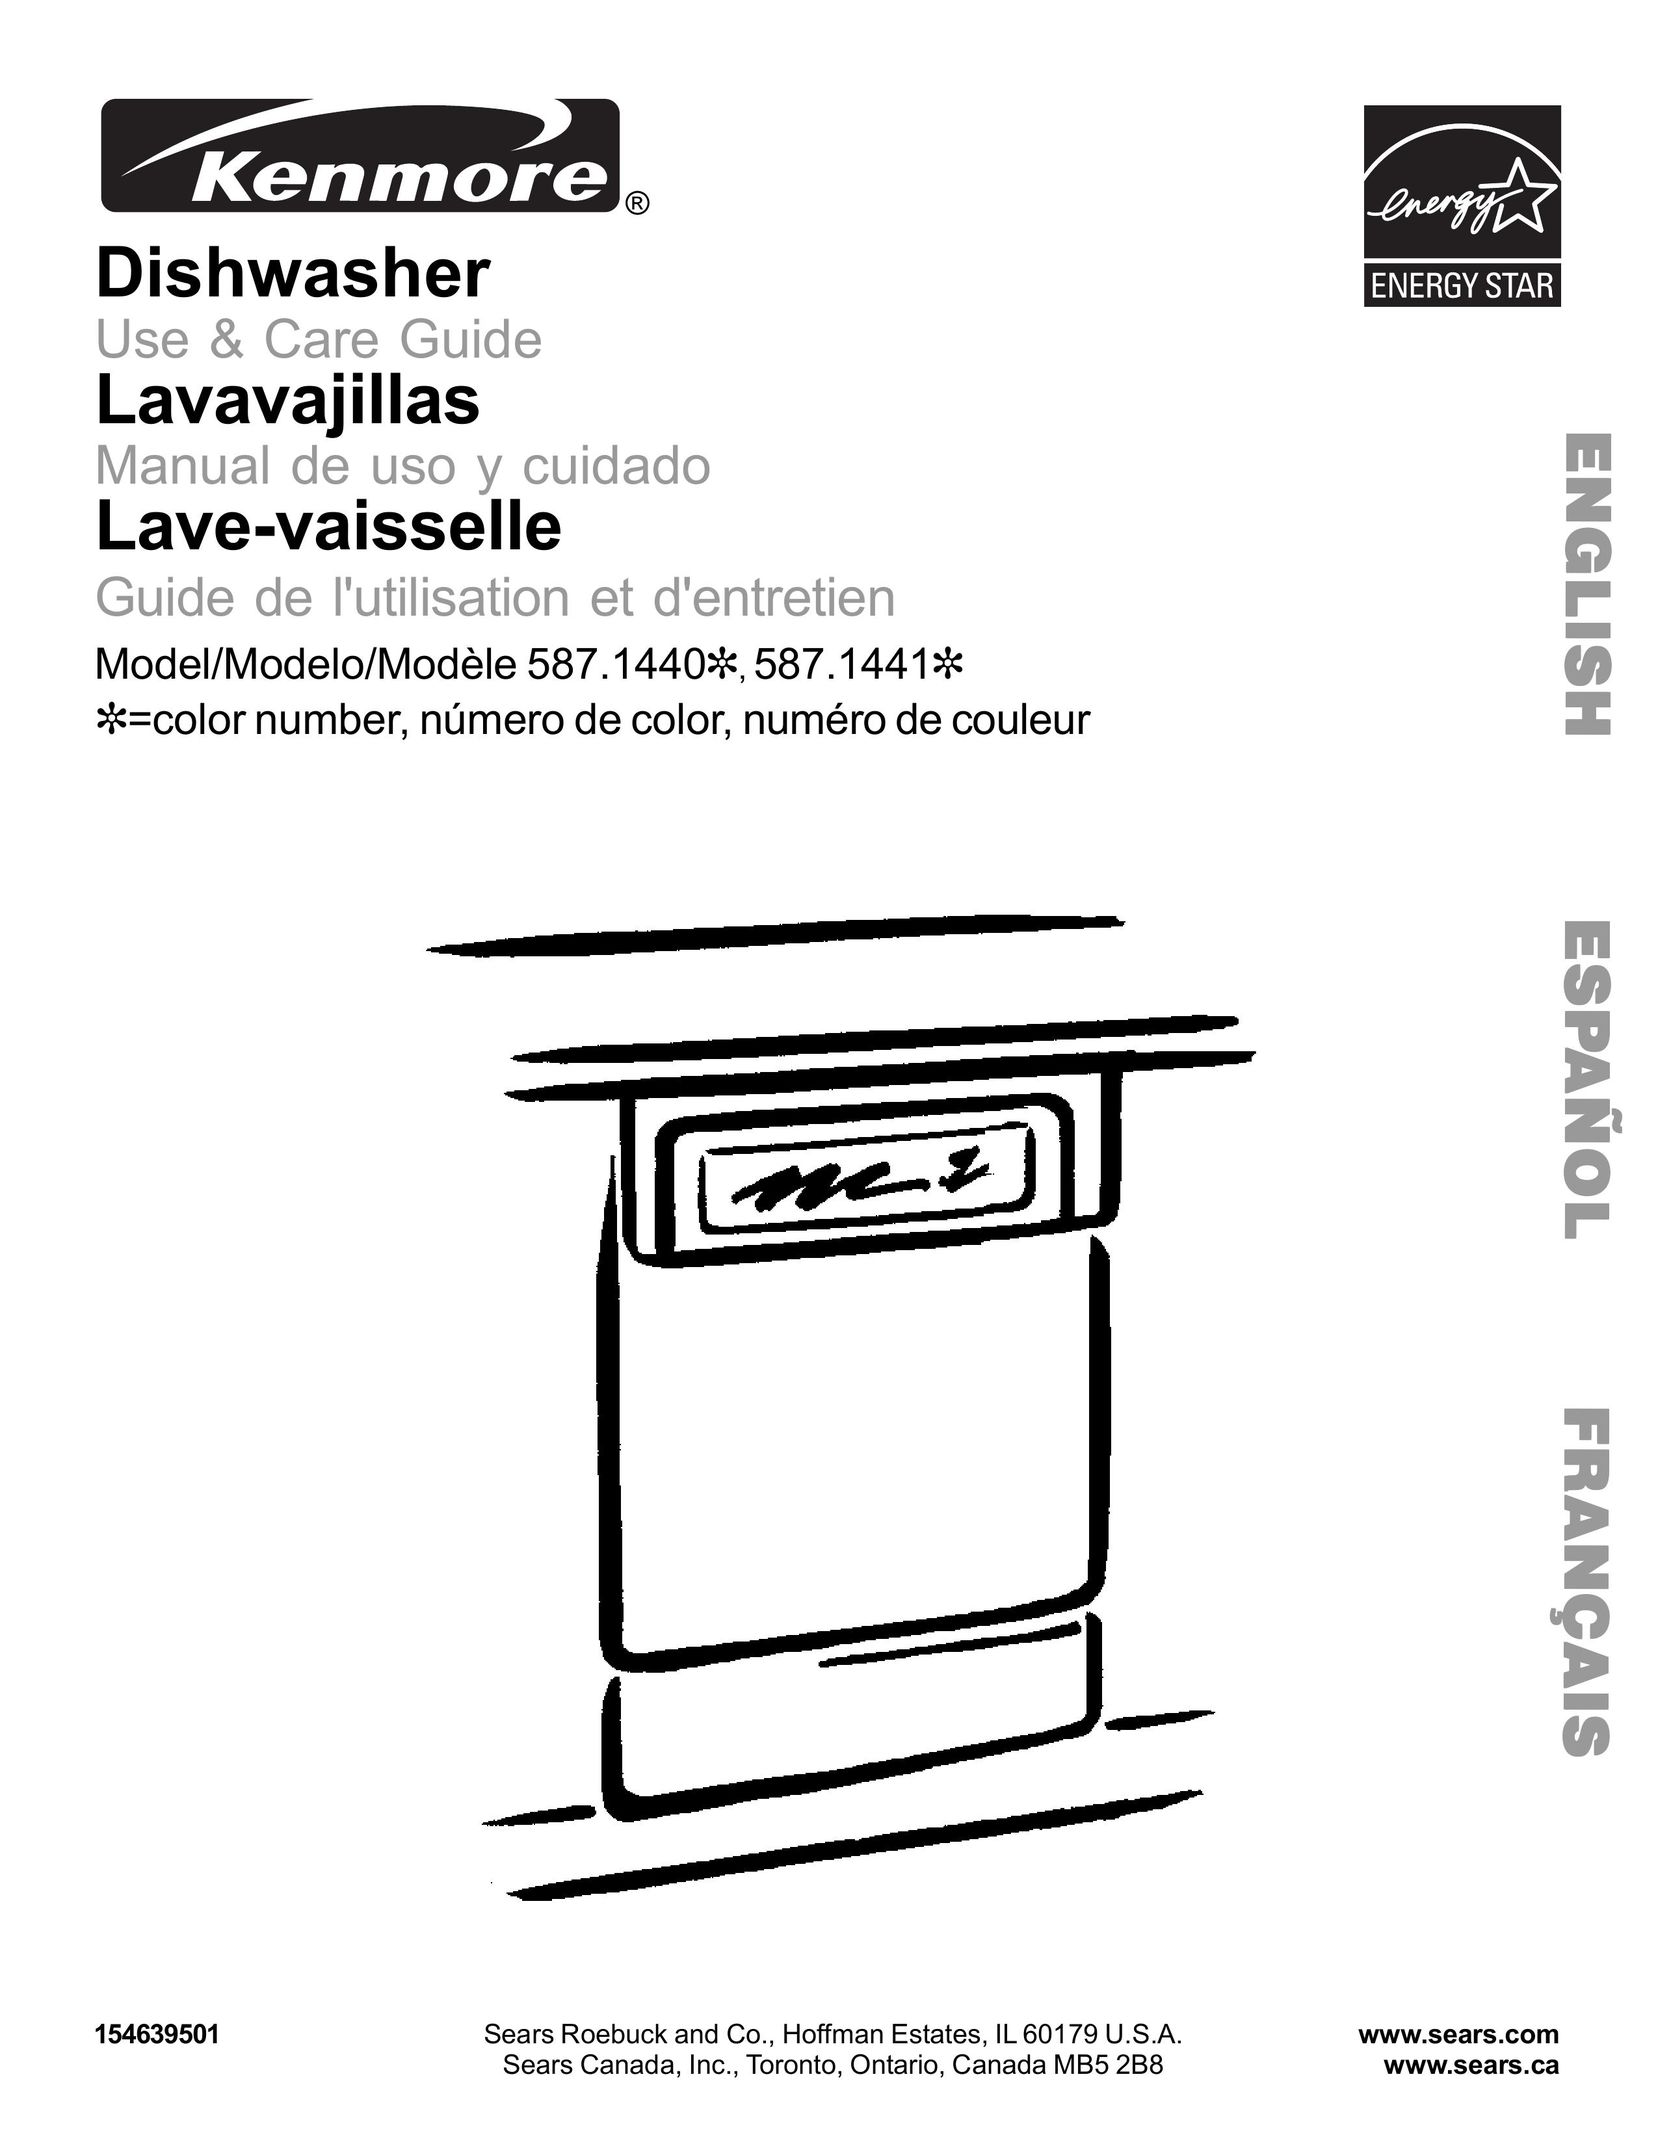 Kenmore 587.144 Dishwasher User Manual